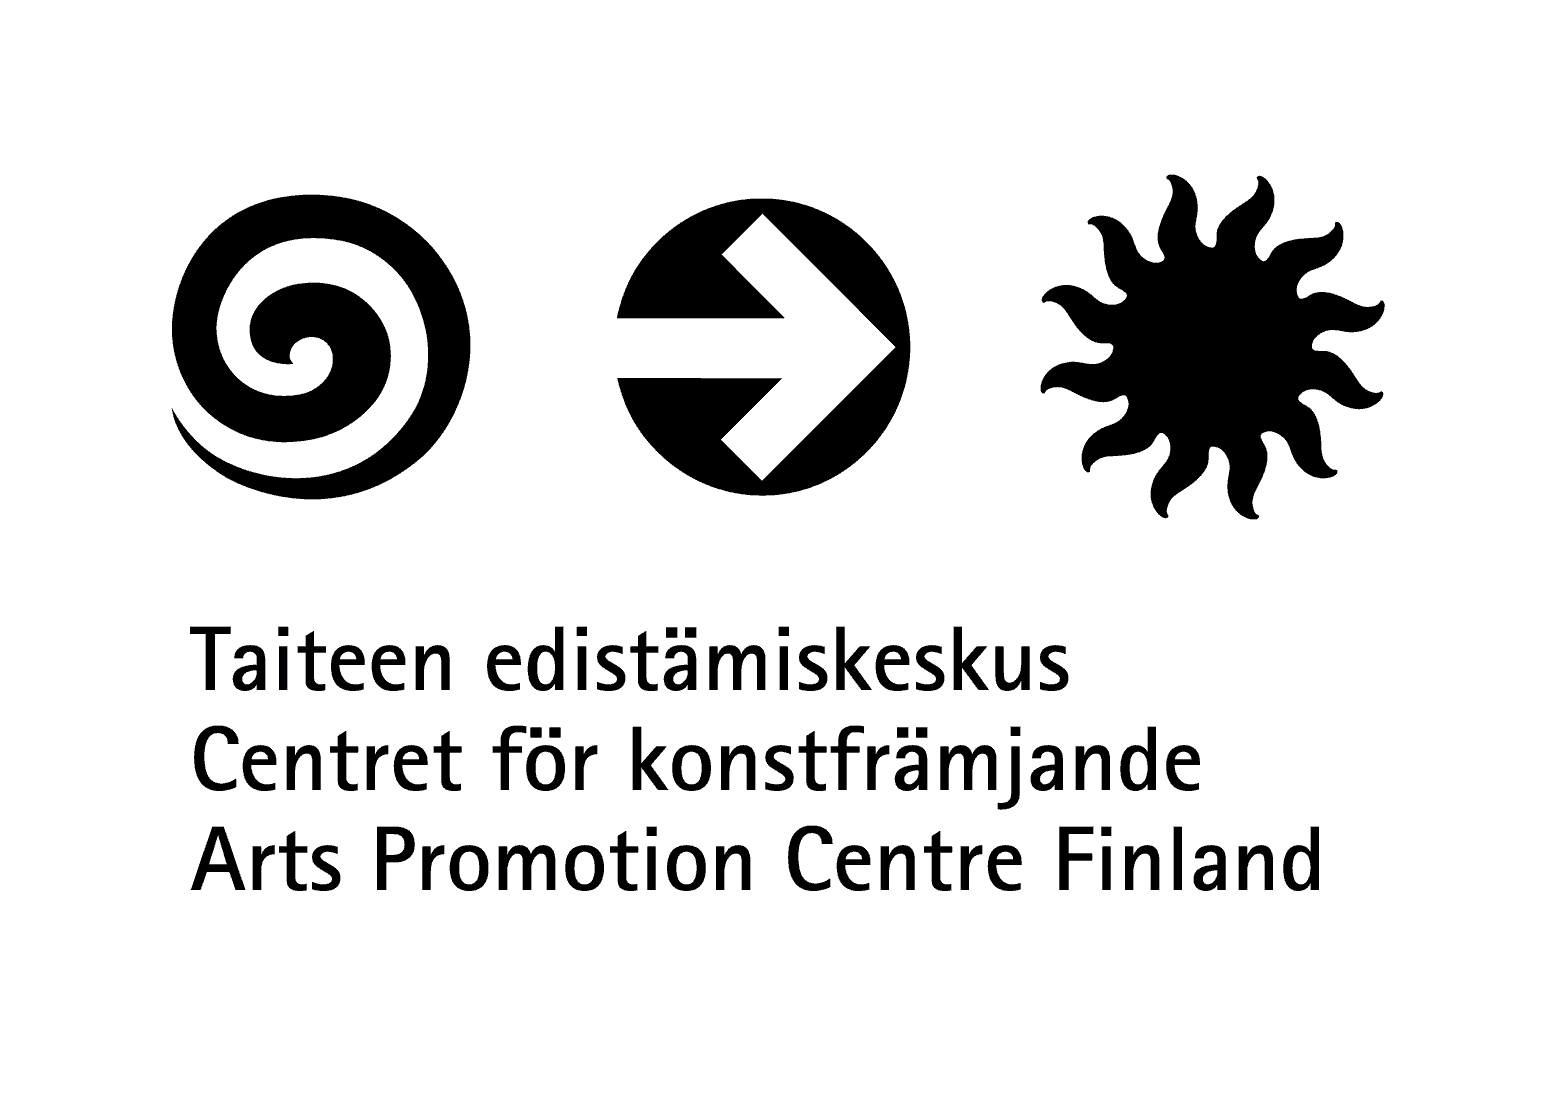 Taiteen edistämiskeskuksen logo.